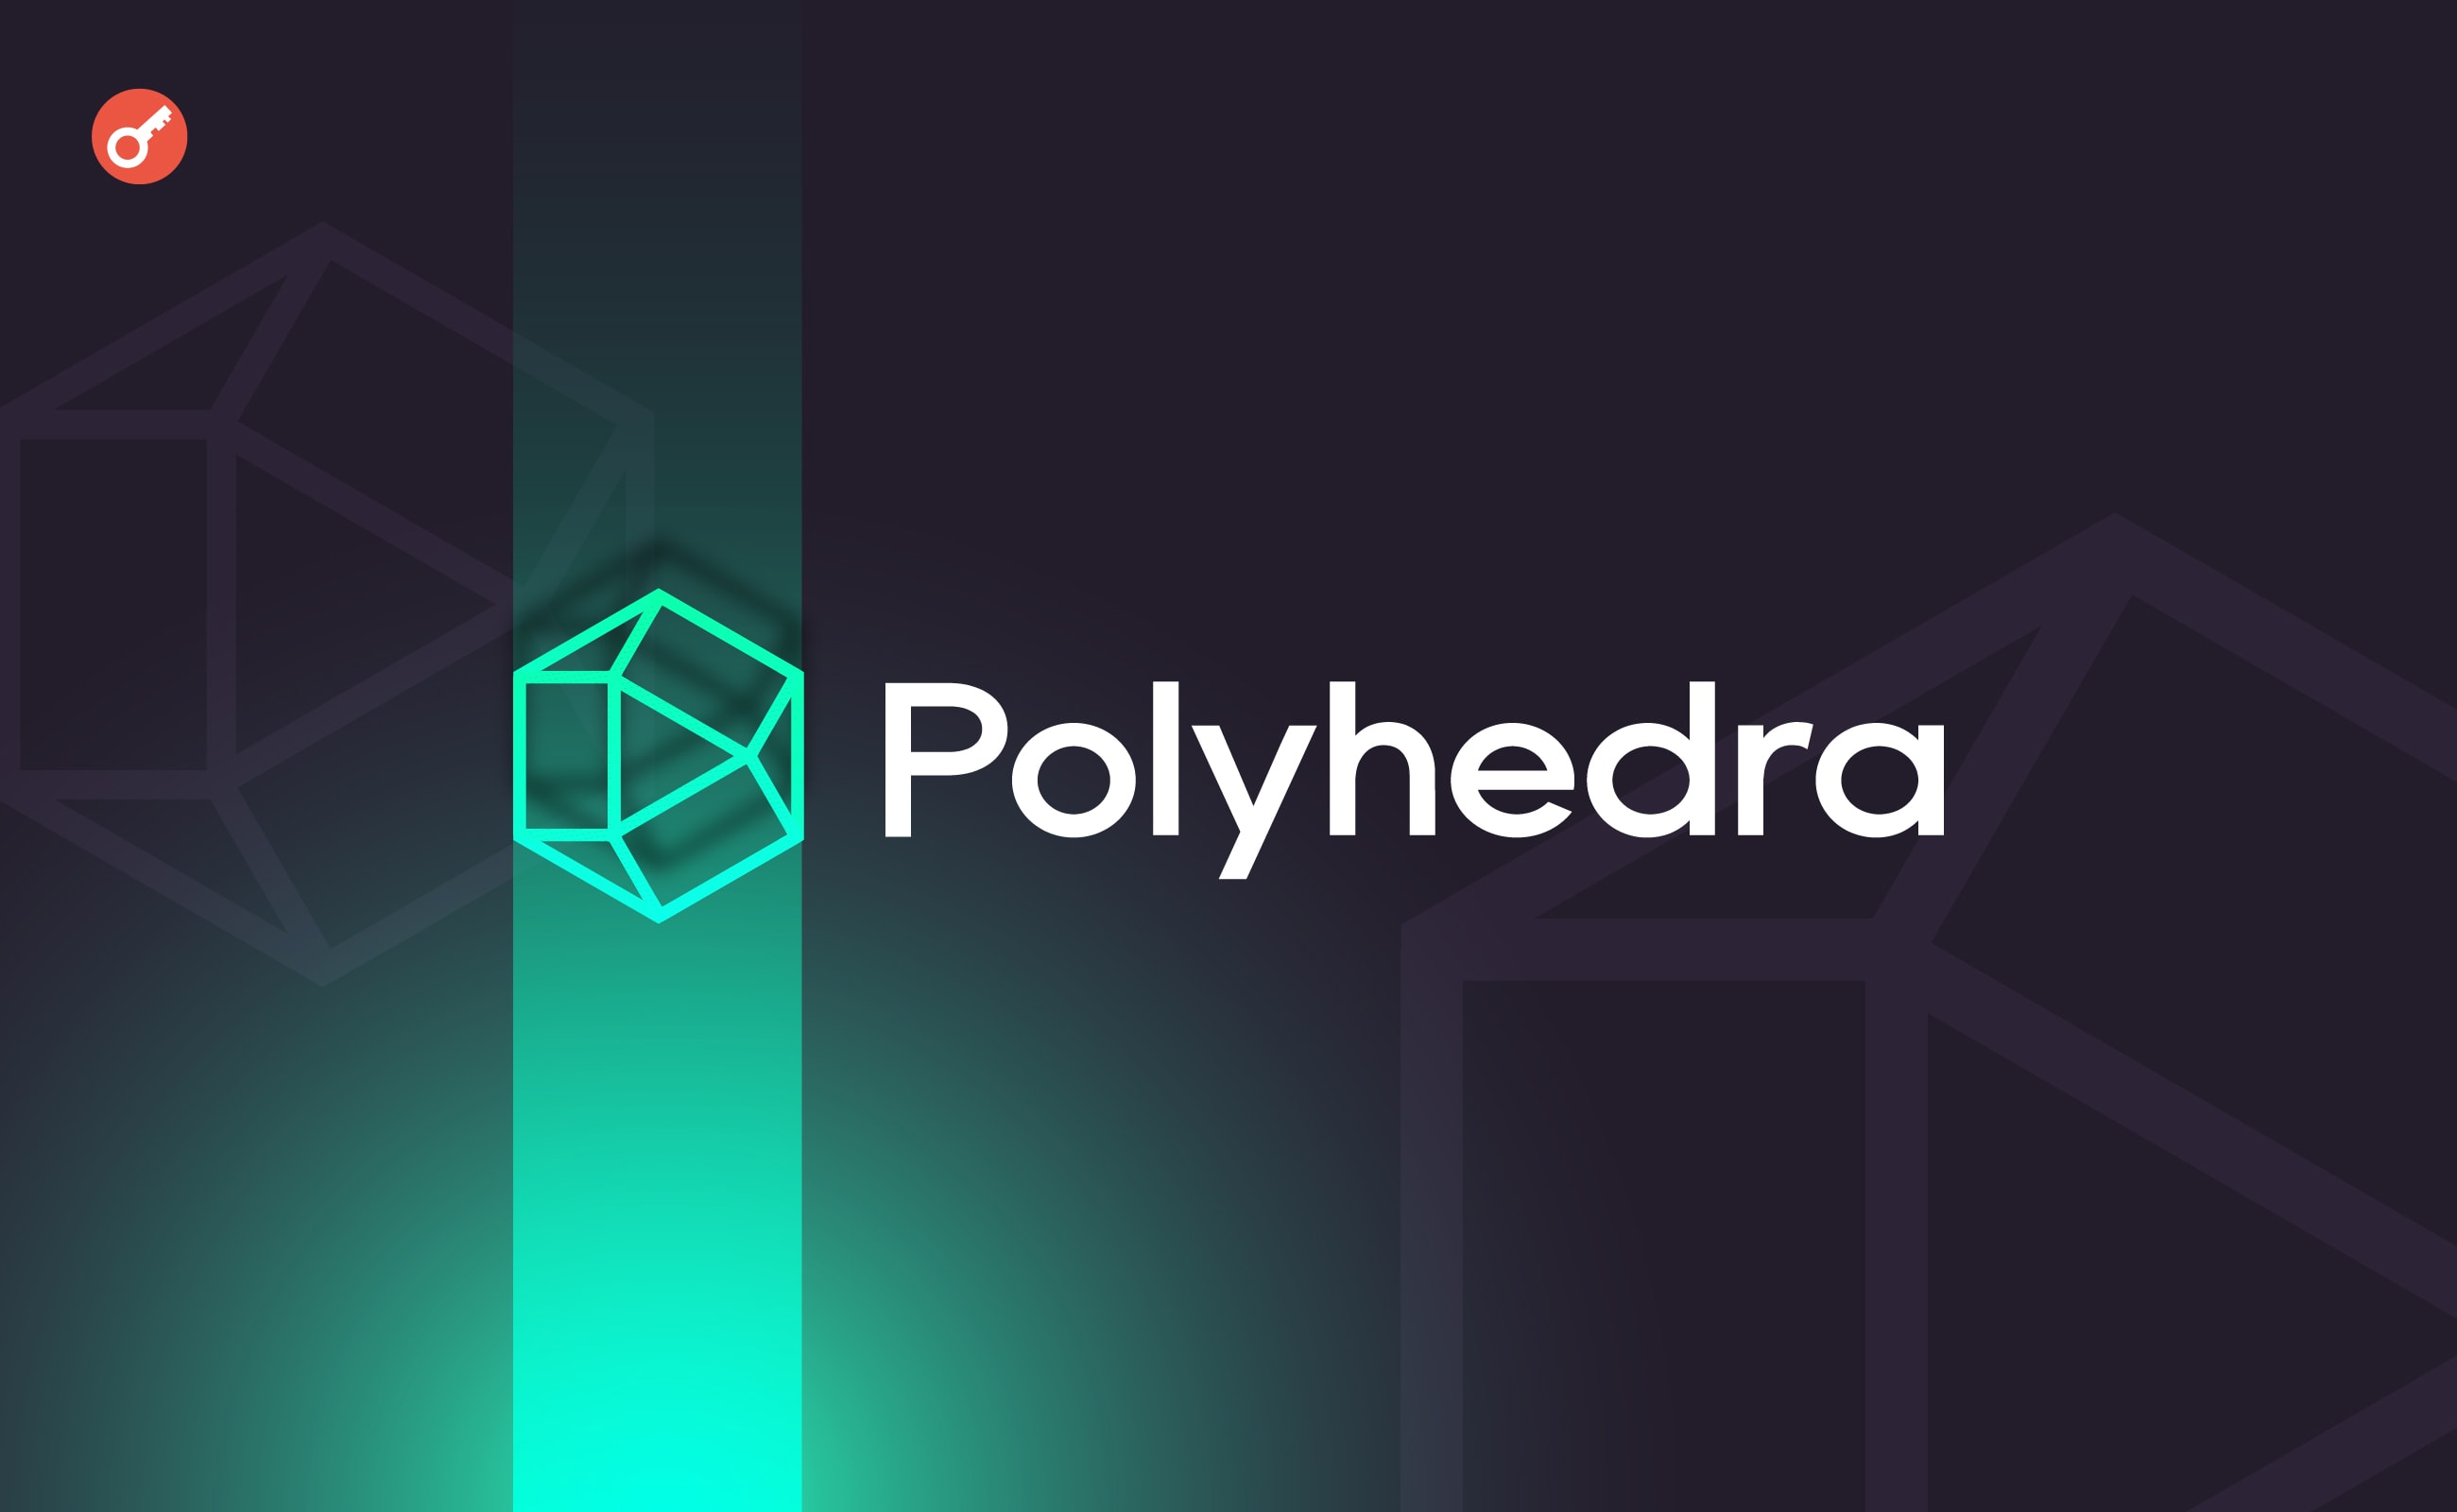 Zespół Polyhedra Network oskarżył zkSync o kradzież tickera tokena. Główny kolaż wiadomości.